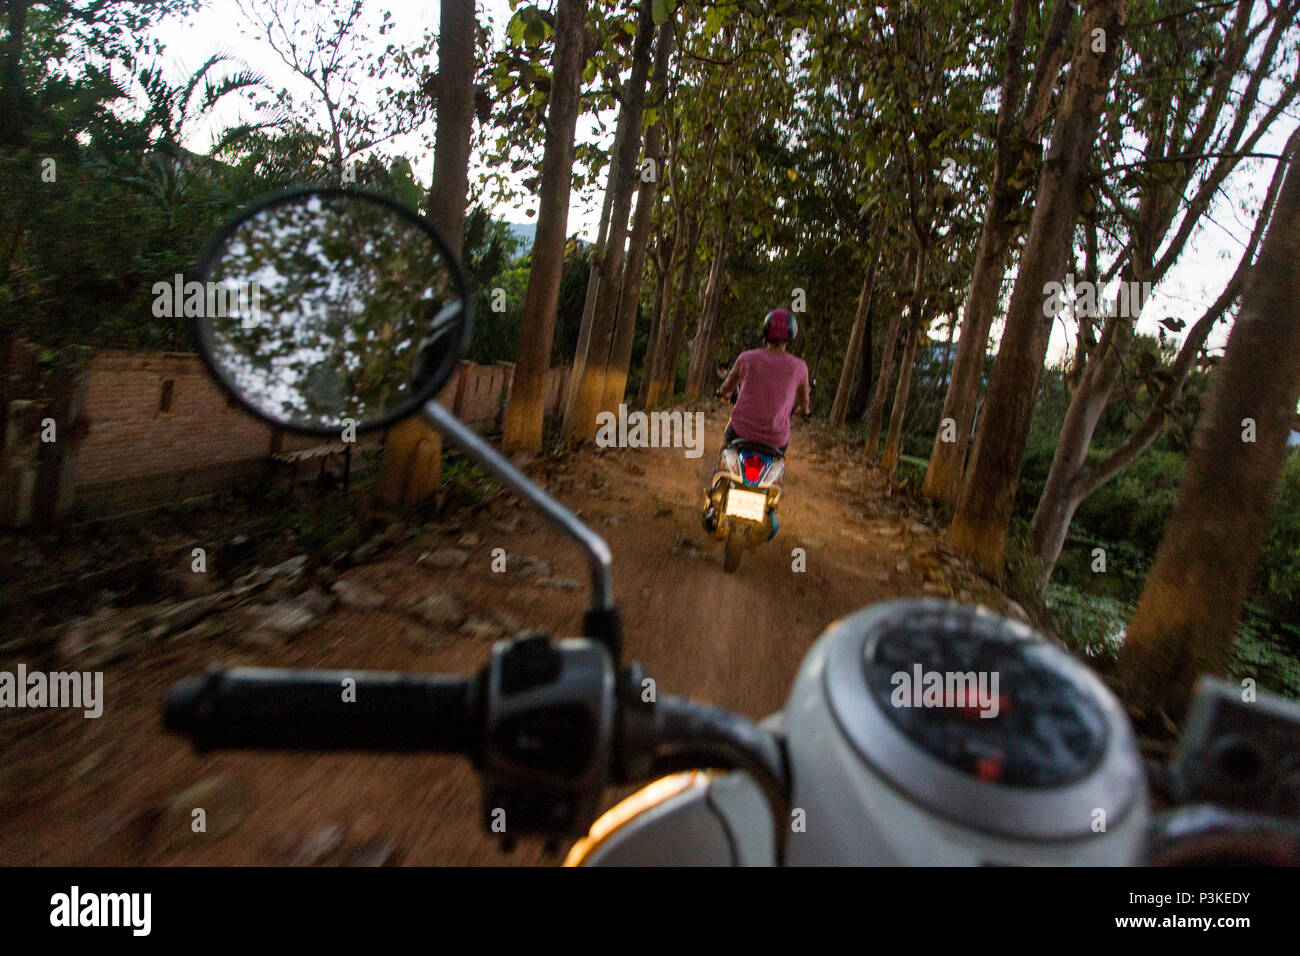 Woman riding scooter sur route de terre, PAI, Mae Hong Son, Thaïlande bientôt Banque D'Images